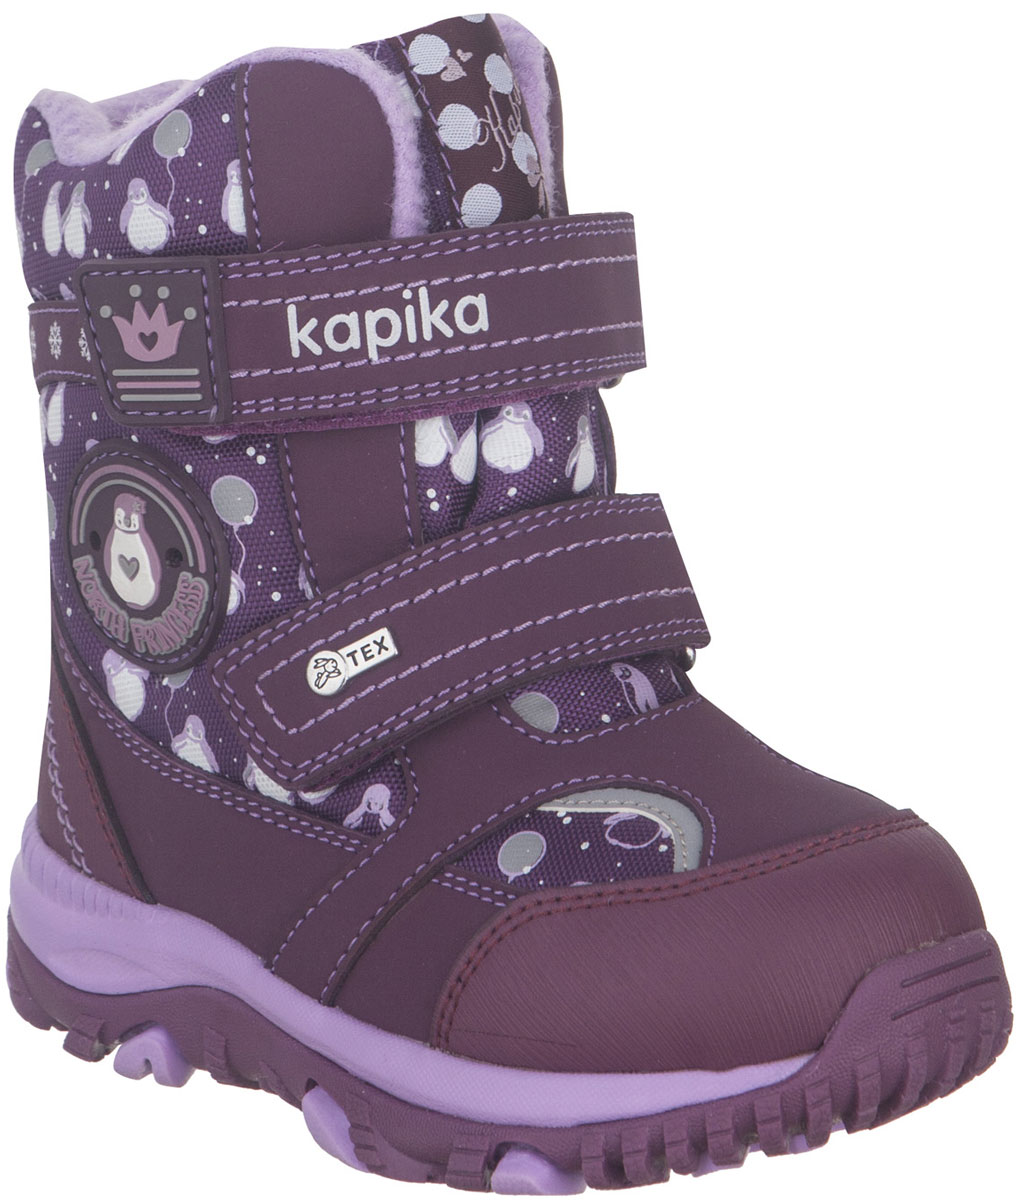 Ботинки для девочки Kapika, цвет: фиолетовый, сиреневый. 41224-1. Размер 23